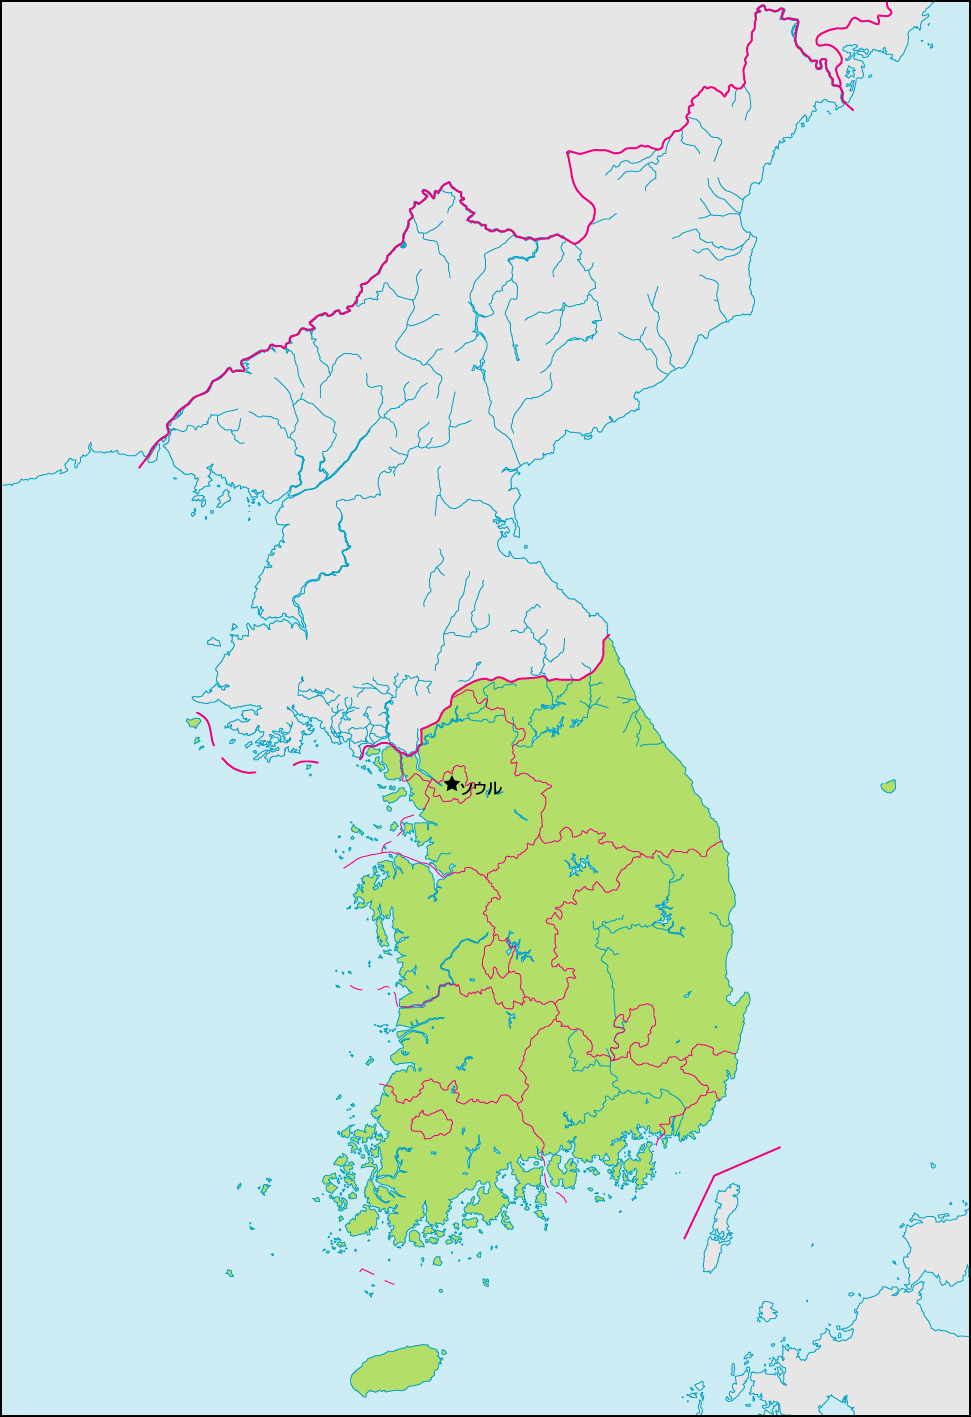 韓国地図(行政区分・首都・国境記載)の画像